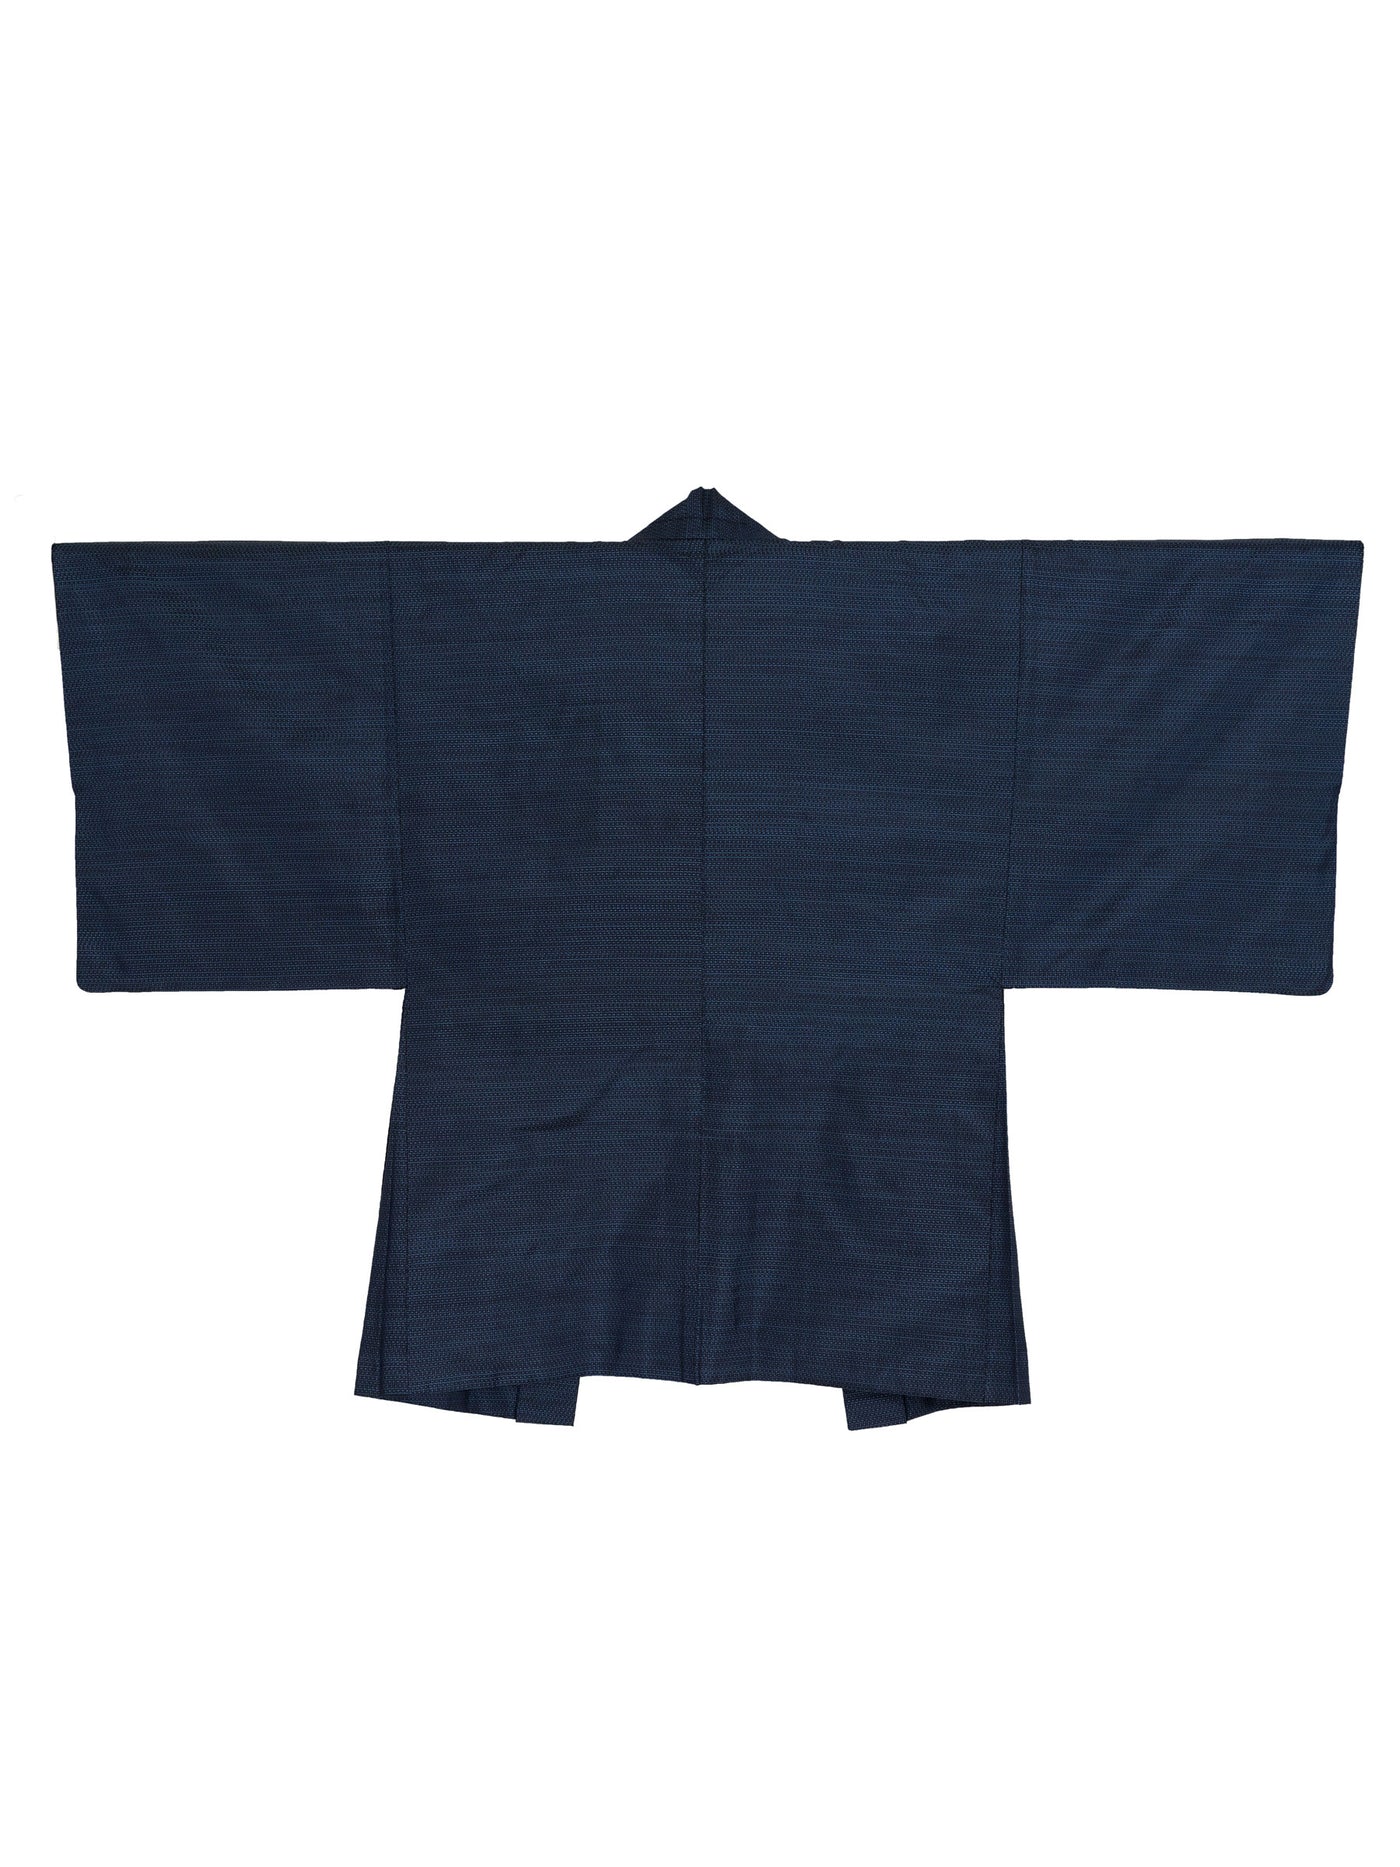 Vintage Fukkei Men's Haori Jacket